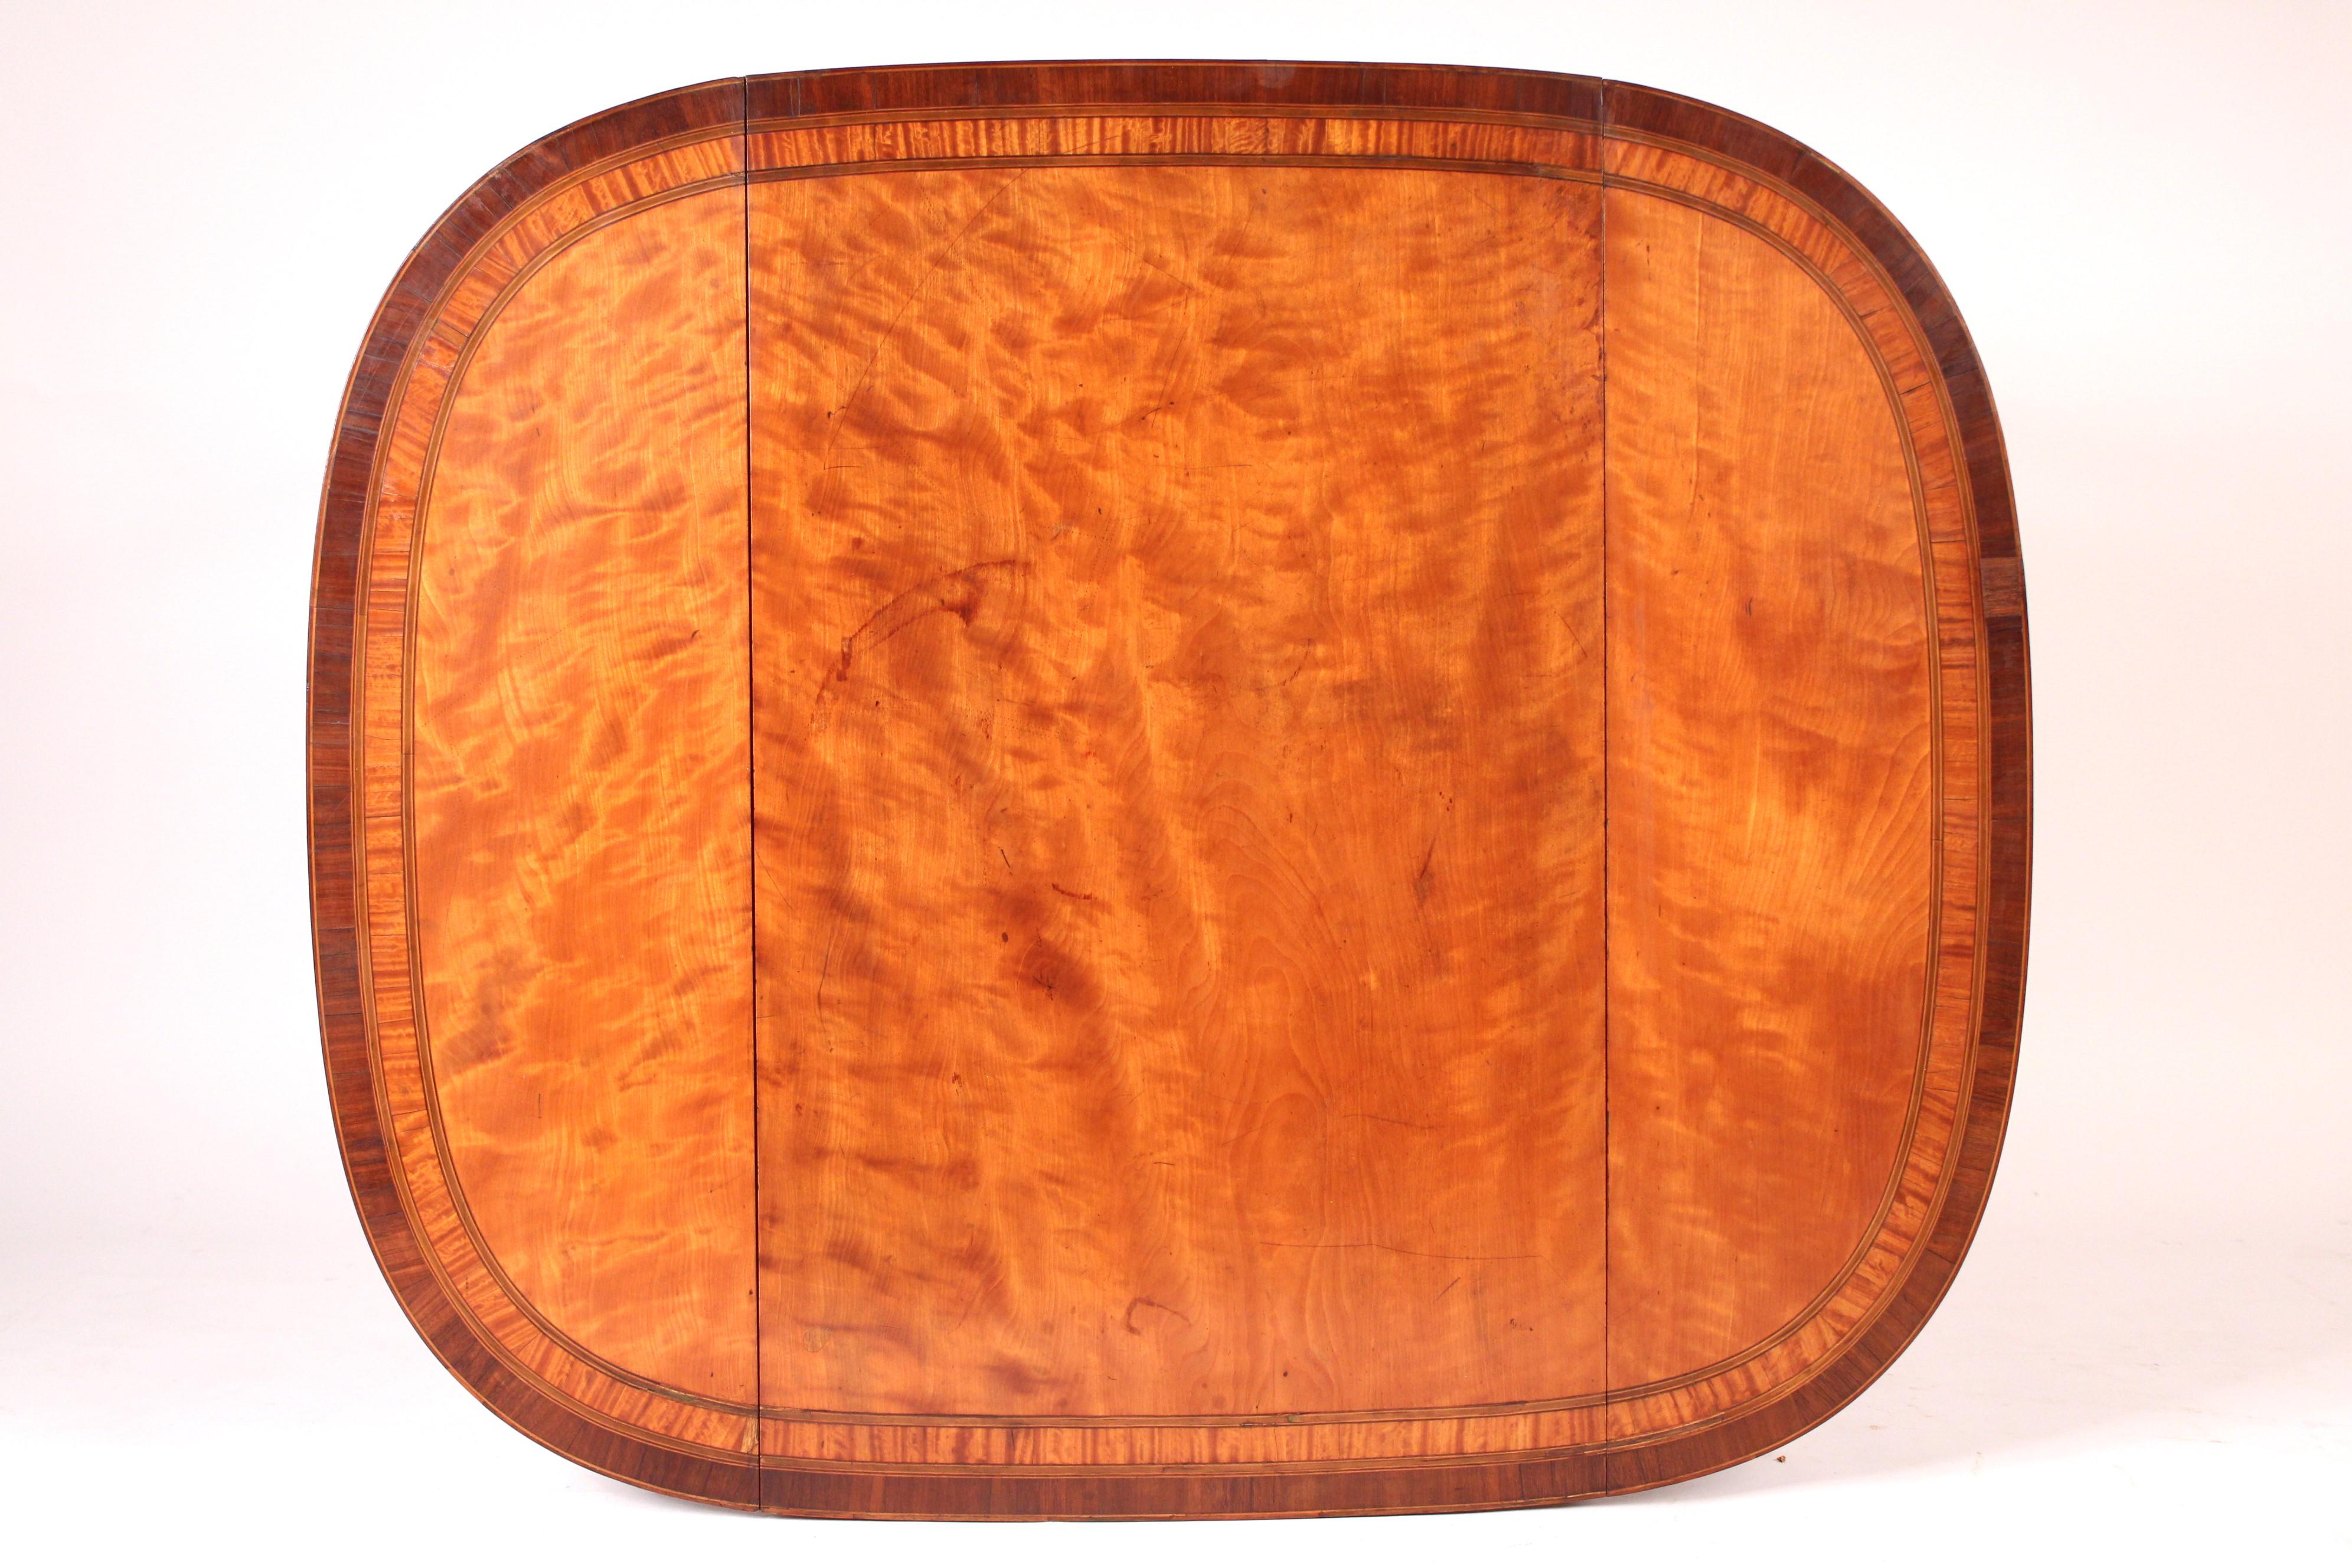 Englischer edwardianischer Pembroke-Tisch aus Seidenholz (Messing)